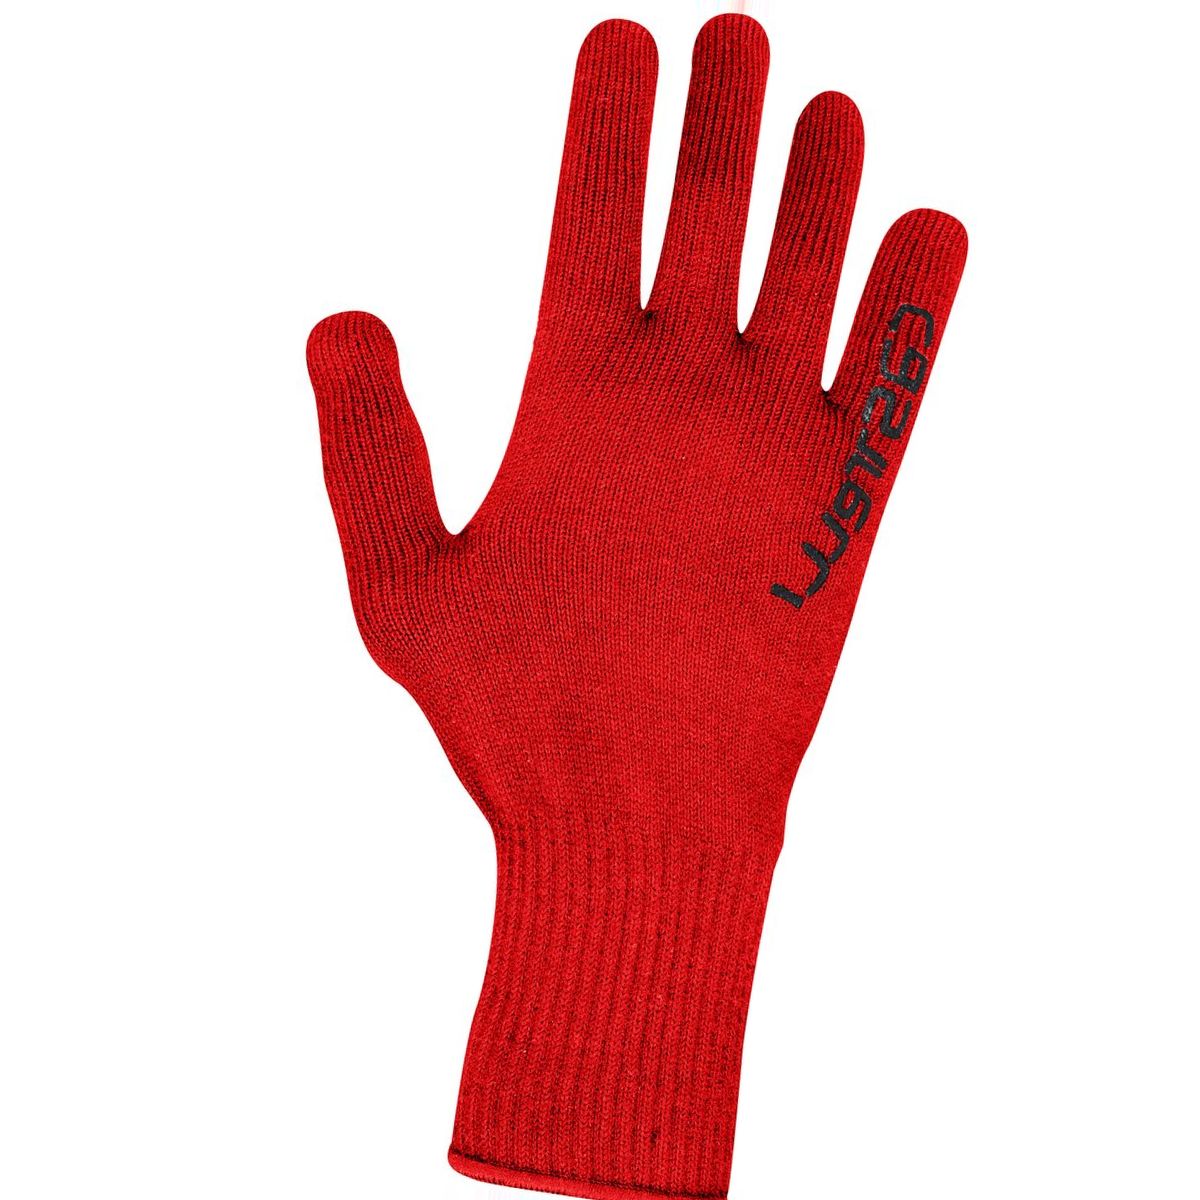 Castelli Corridore Glove - Men's